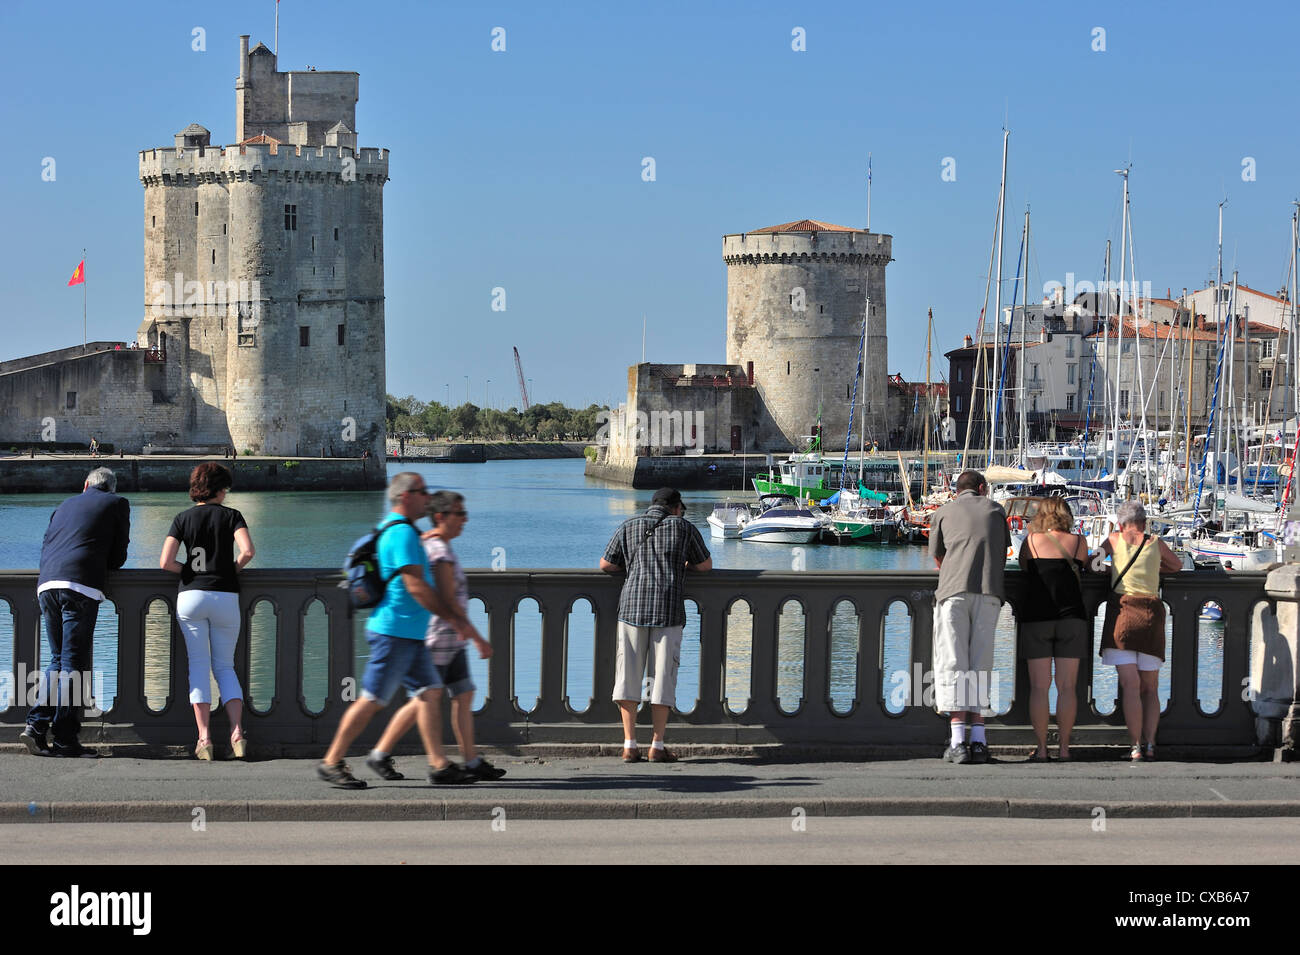 The towers tour de la Chaîne and tour Saint-Nicolas in the old harbour / Vieux-Port at La Rochelle, Charente-Maritime, France Stock Photo